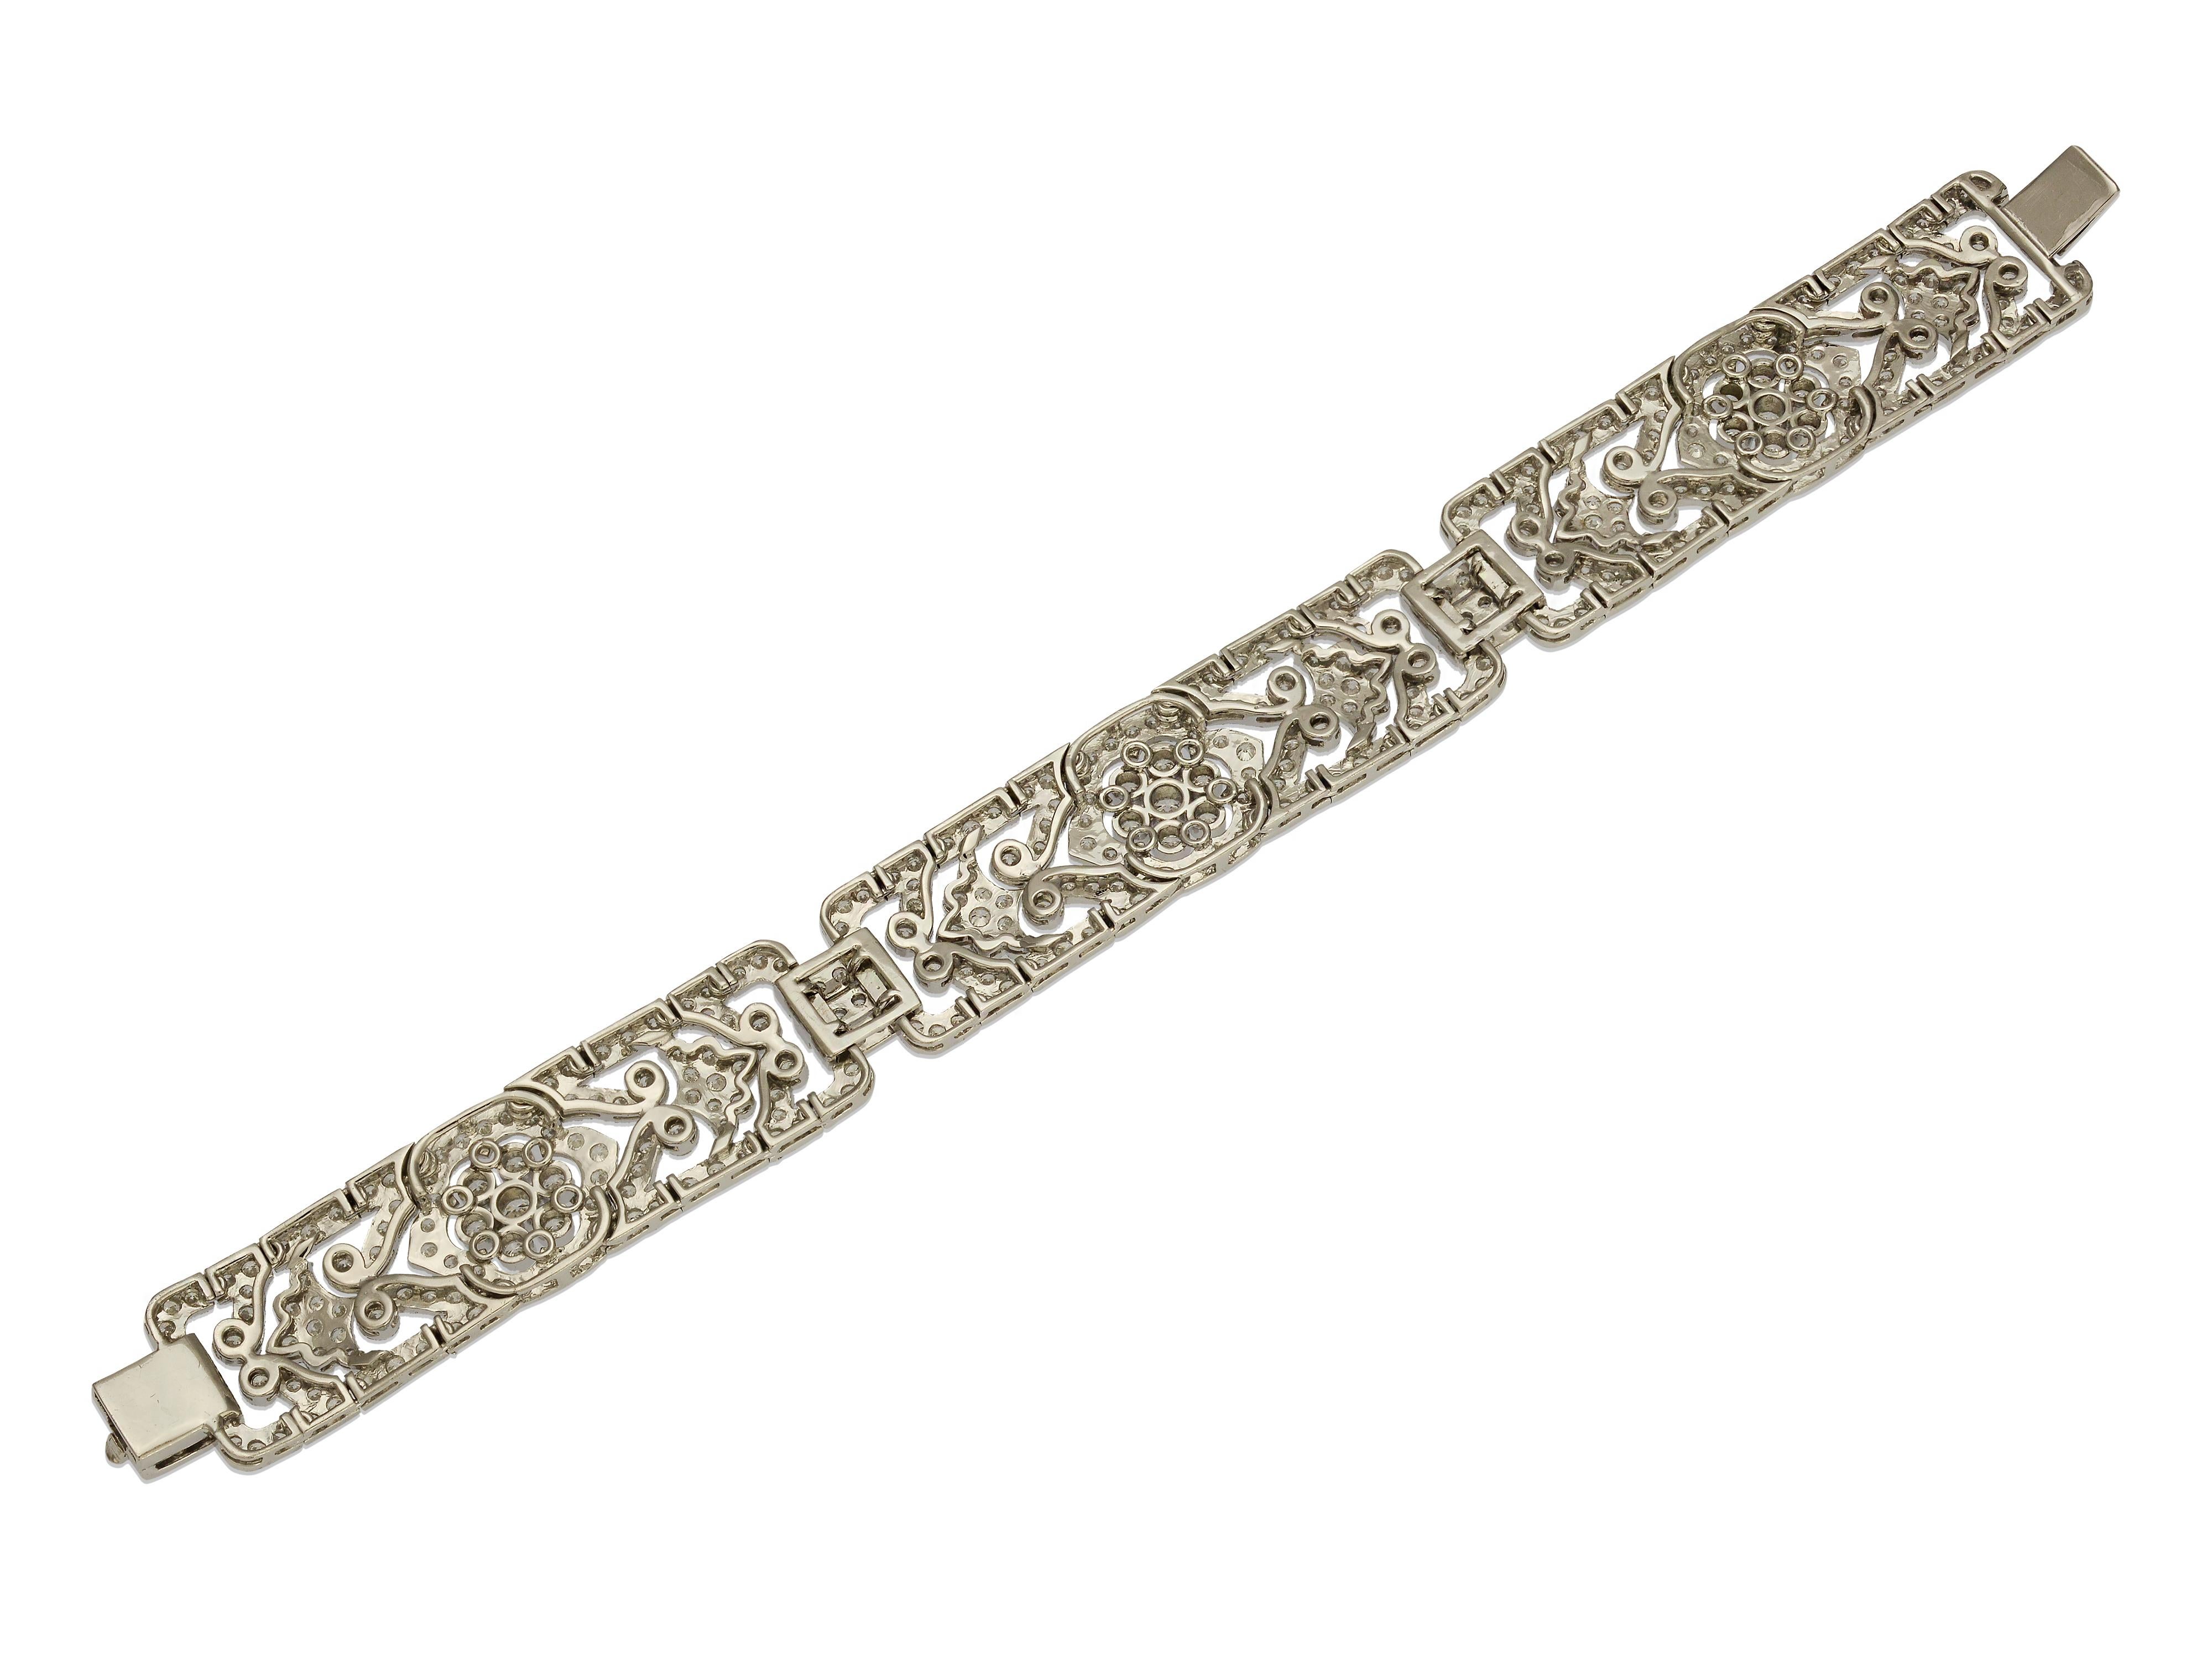 Women's 6.86 Carat Diamond Bracelet with Floral Accents